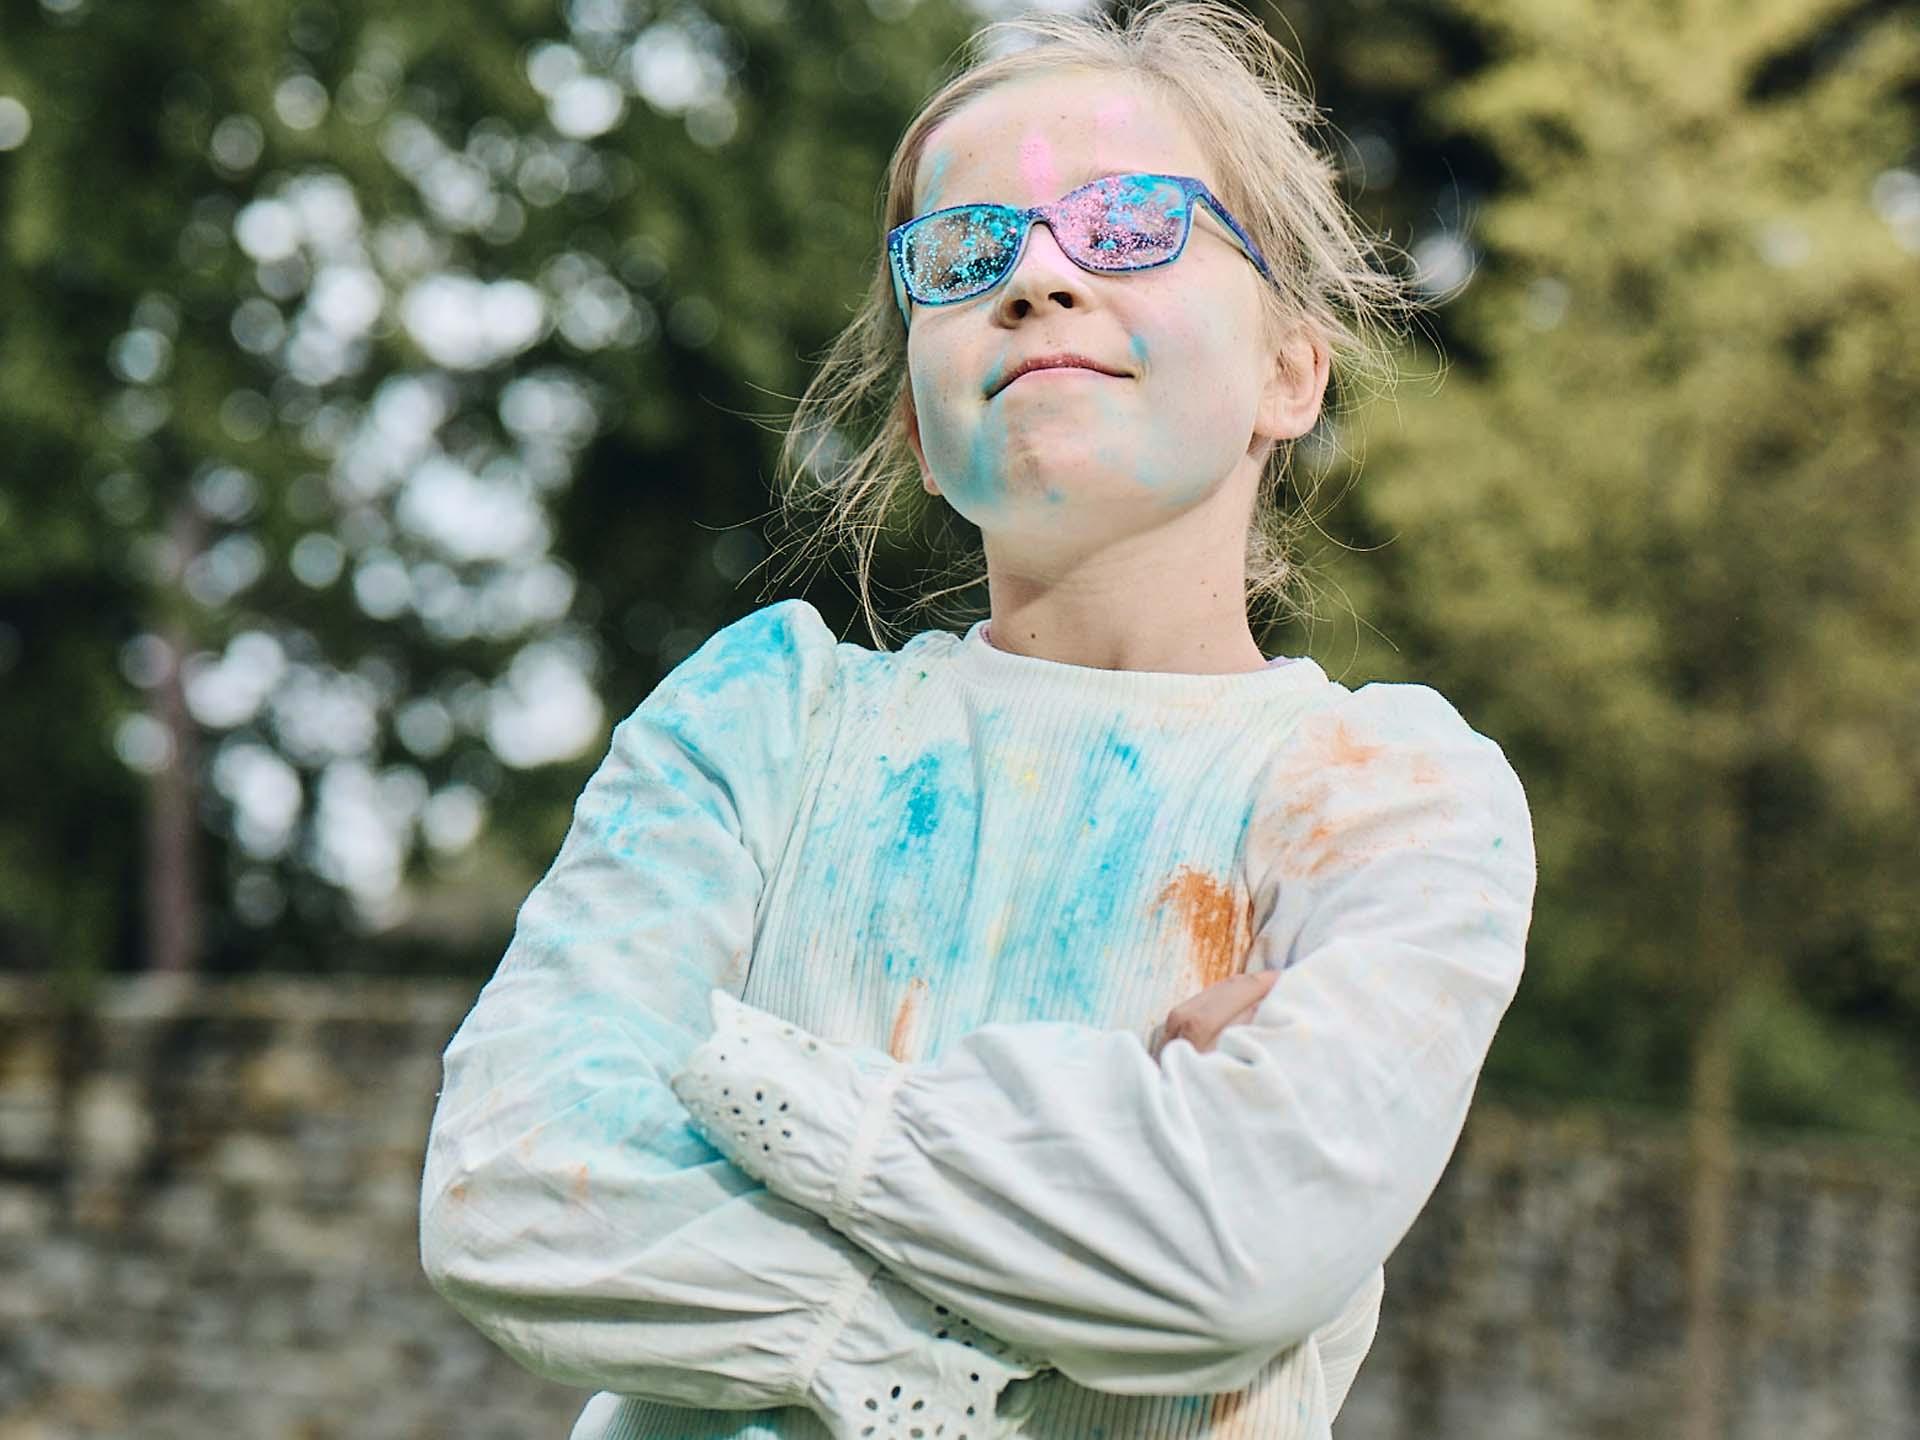 En jente med korslagte armer og skitne briller etter å ha lekt med farget pulver ser modig ut og smiler.